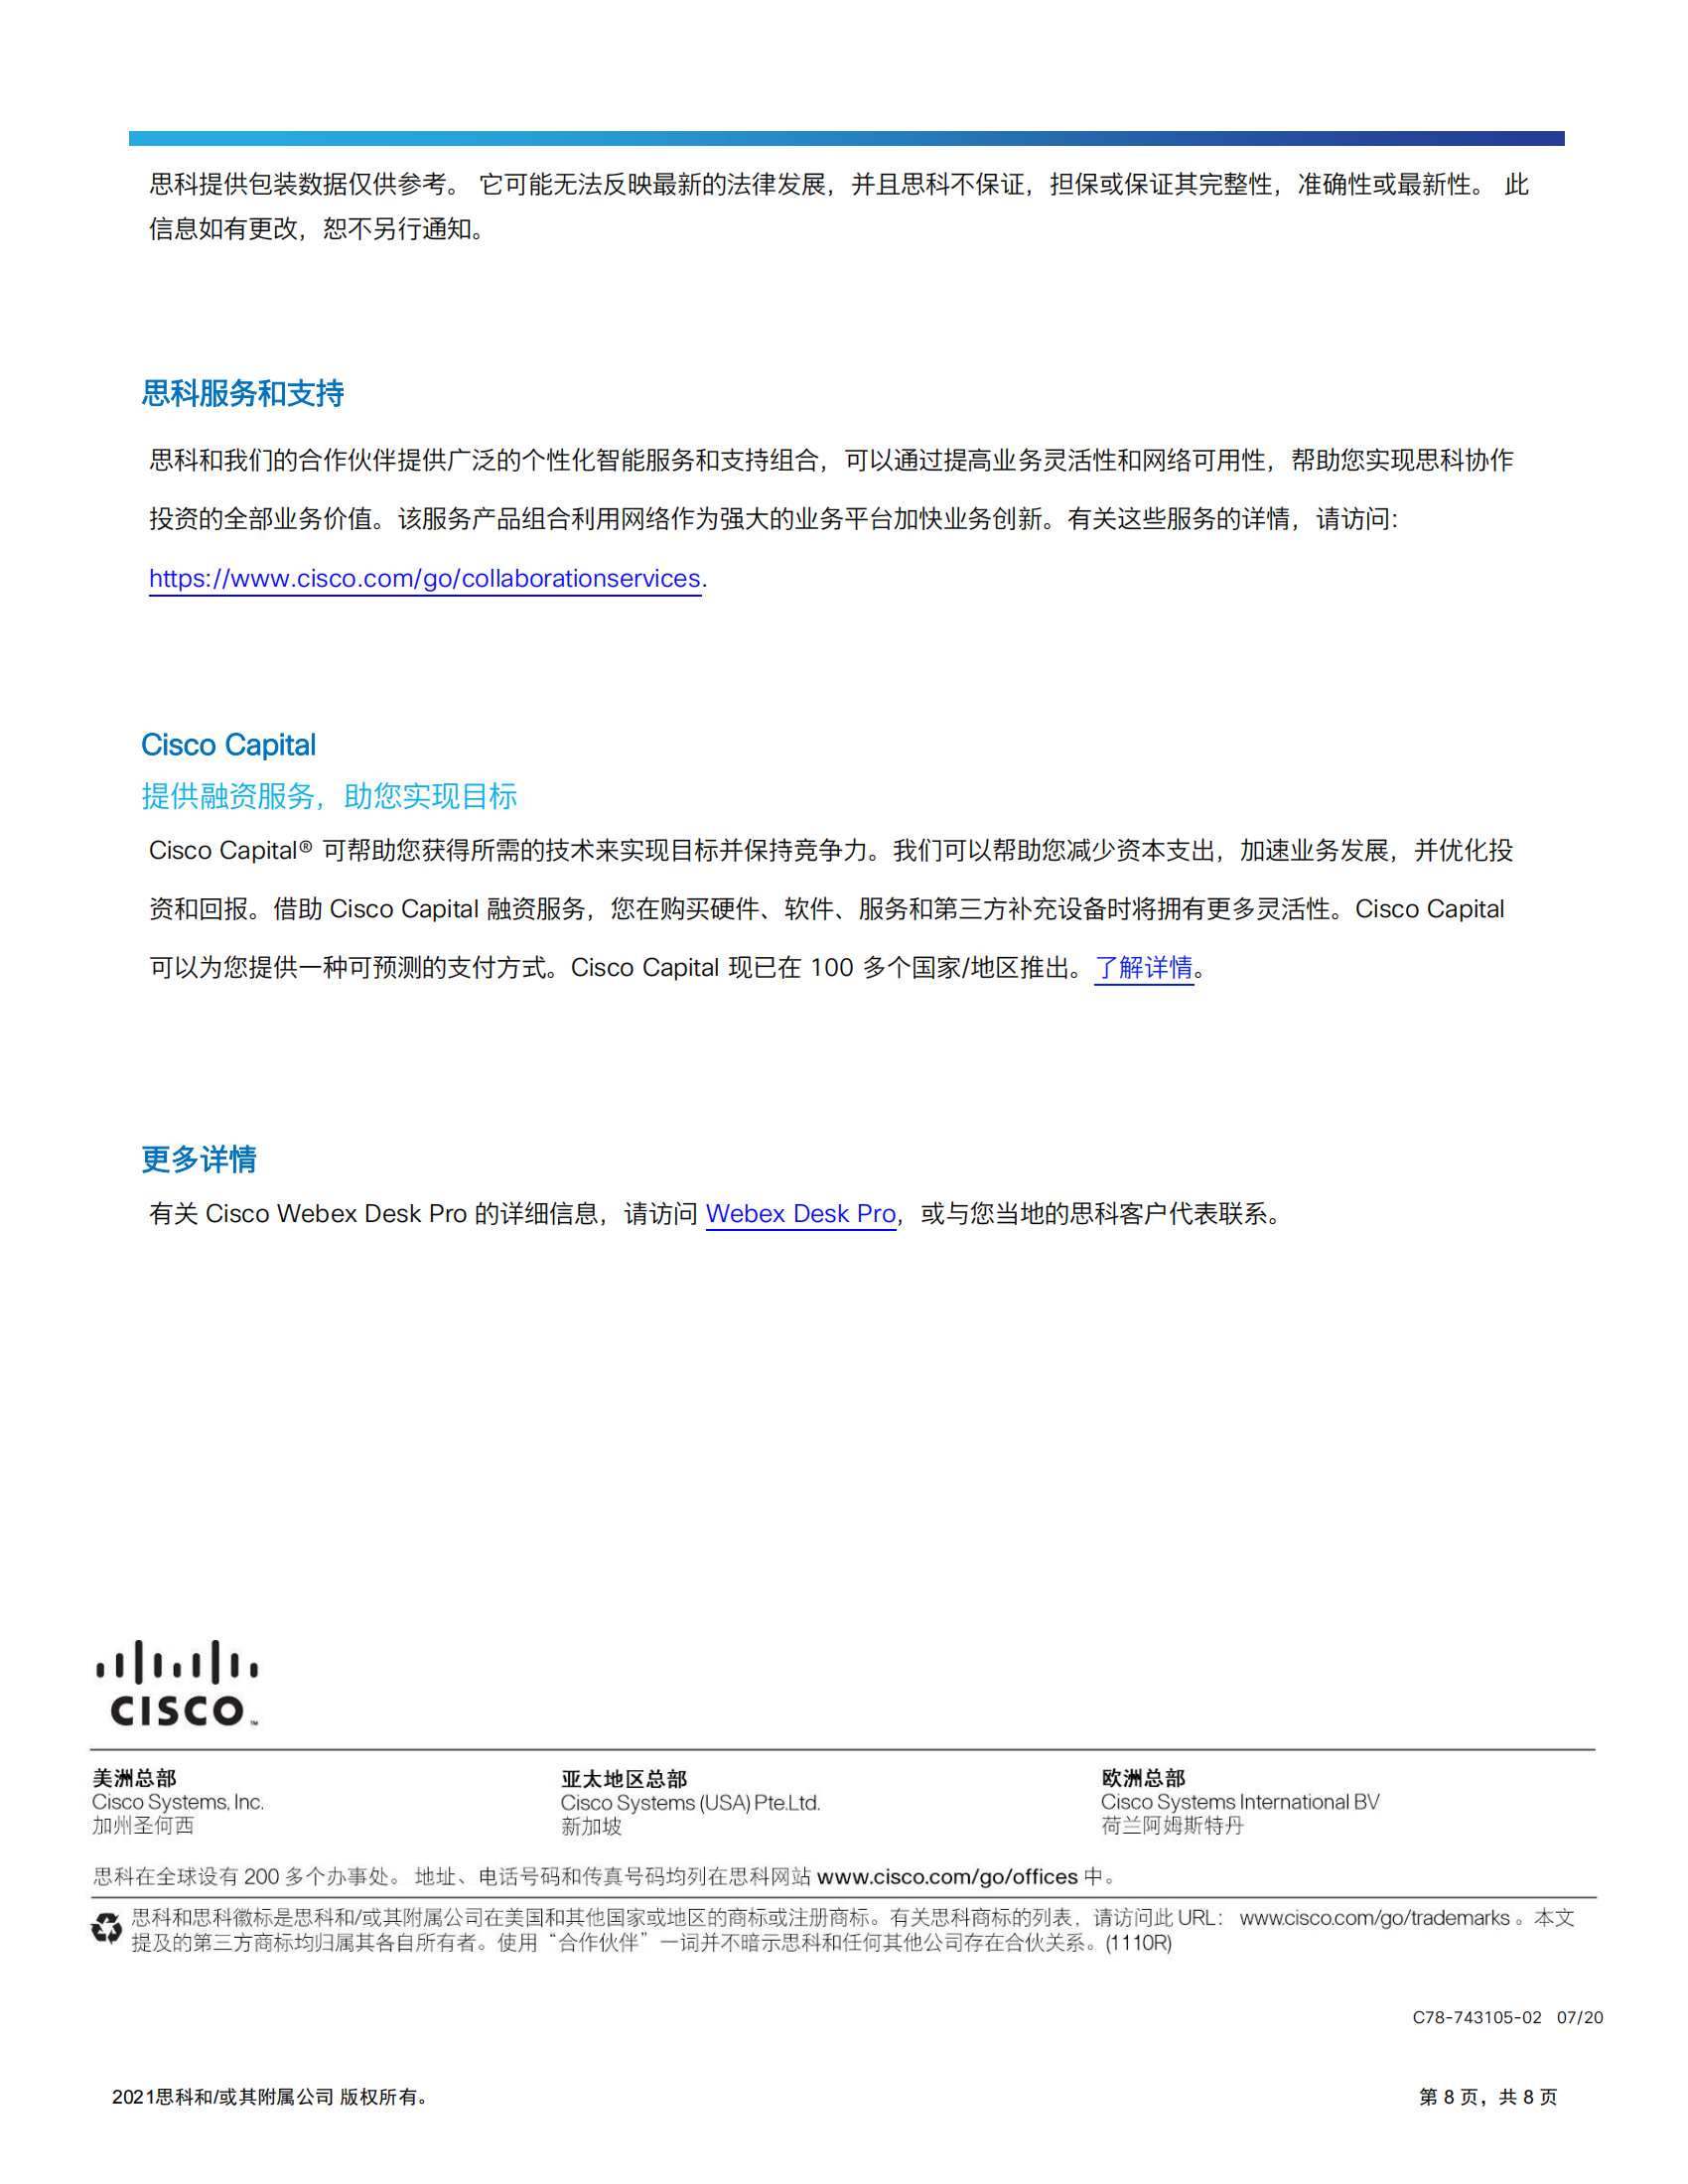 cisco-webex-desk-pro-data-sheet_07.png